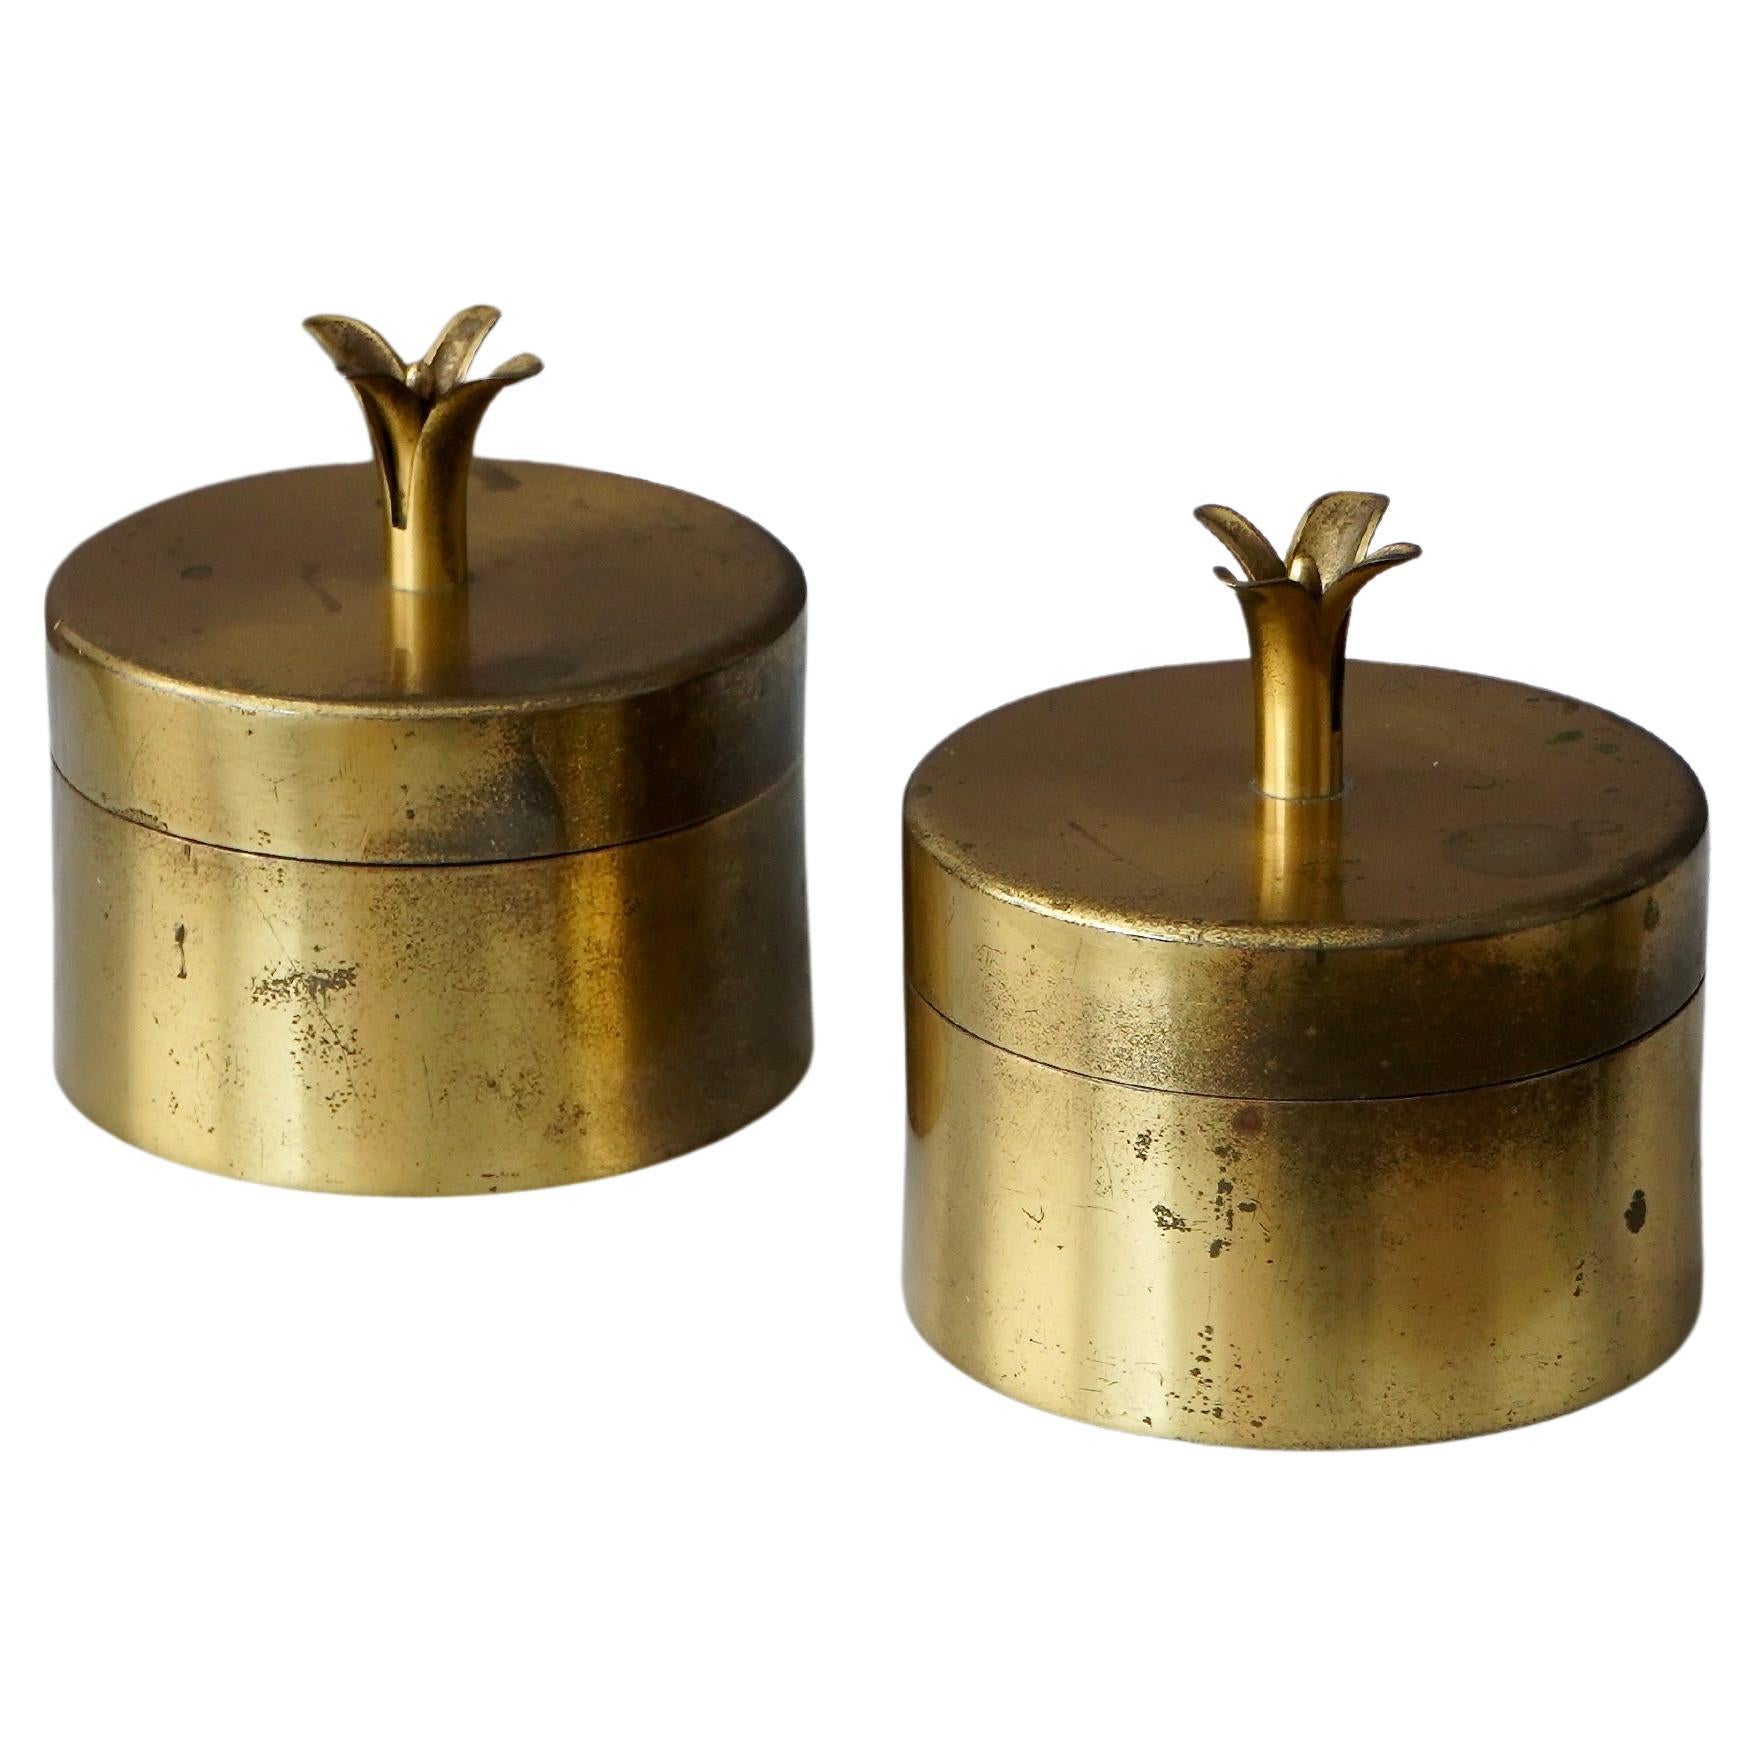 Pair of Brass Lidded Boxes by Ivar Ålenius Björk for Ystad Metall, Sweden, 1930s For Sale